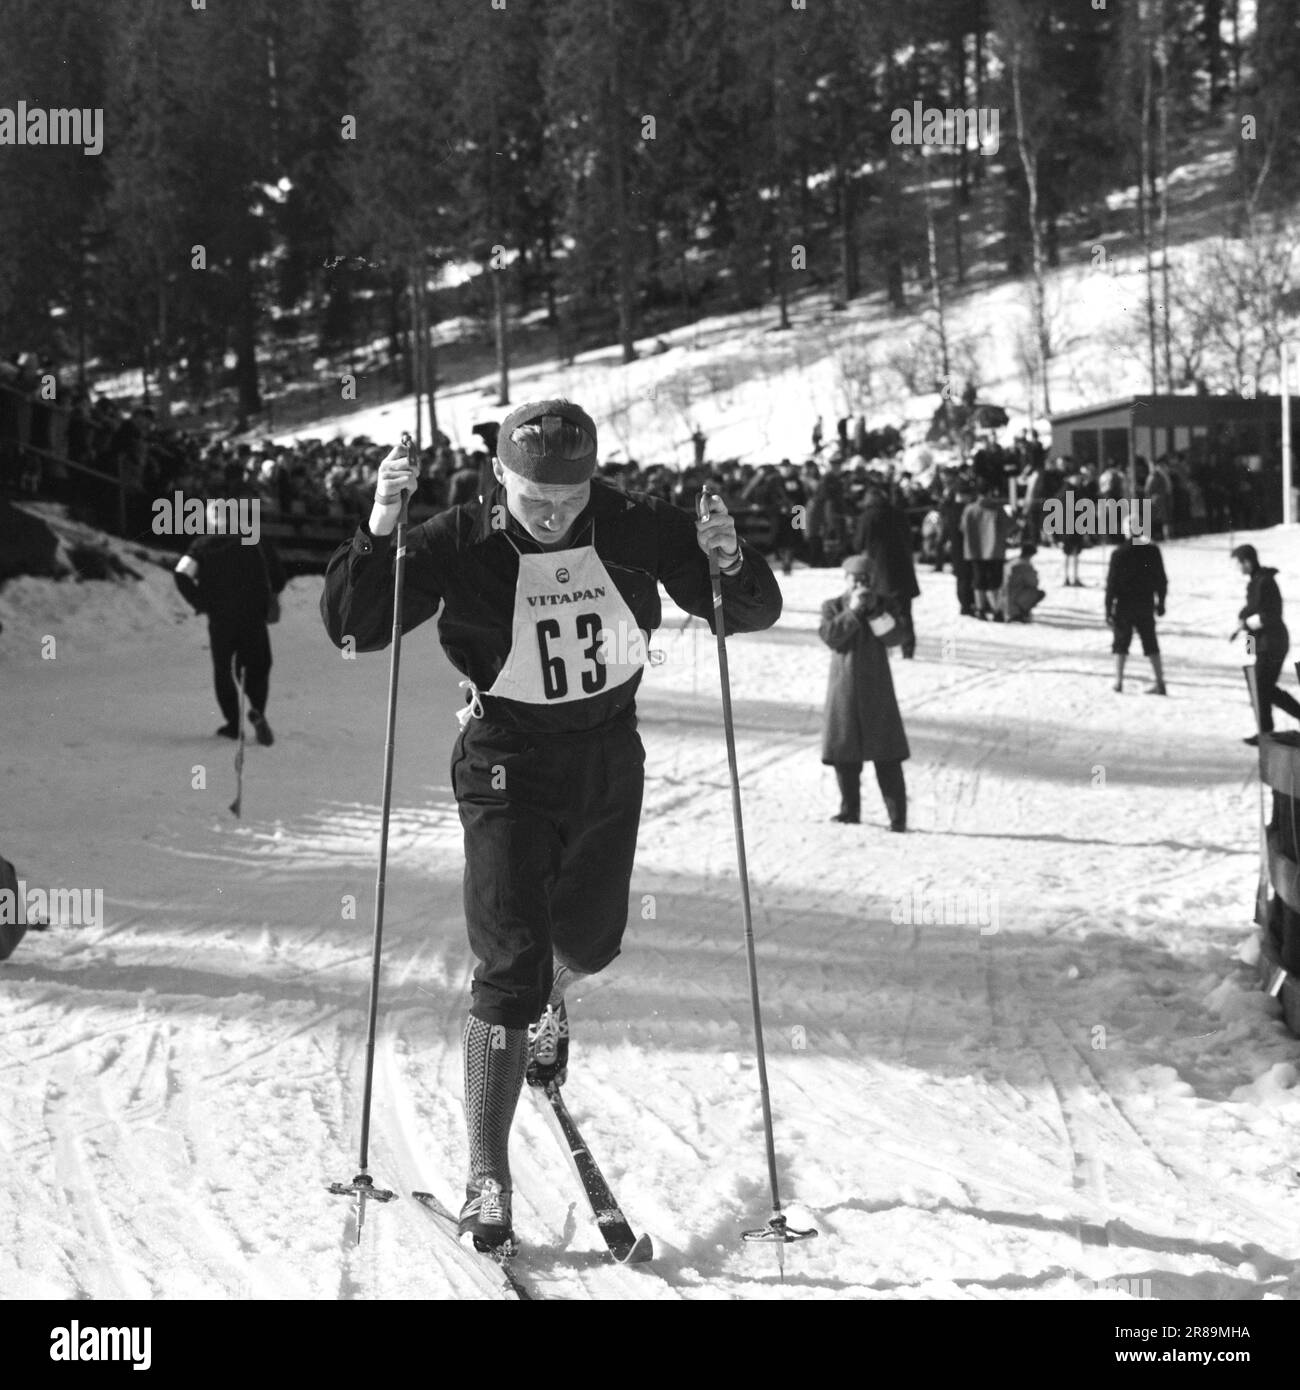 Attuale 15-3-1960: Abbiamo vinto e abbiamo vinto... I jumper hanno raccolto i record del pubblico e gli sciatori di fondo hanno fatto la storia dello sci. Foto: Sverre A. Børretzen / Aage Storløkken / Aktuell / NTB ***FOTO NON ELABORATA*** Foto Stock